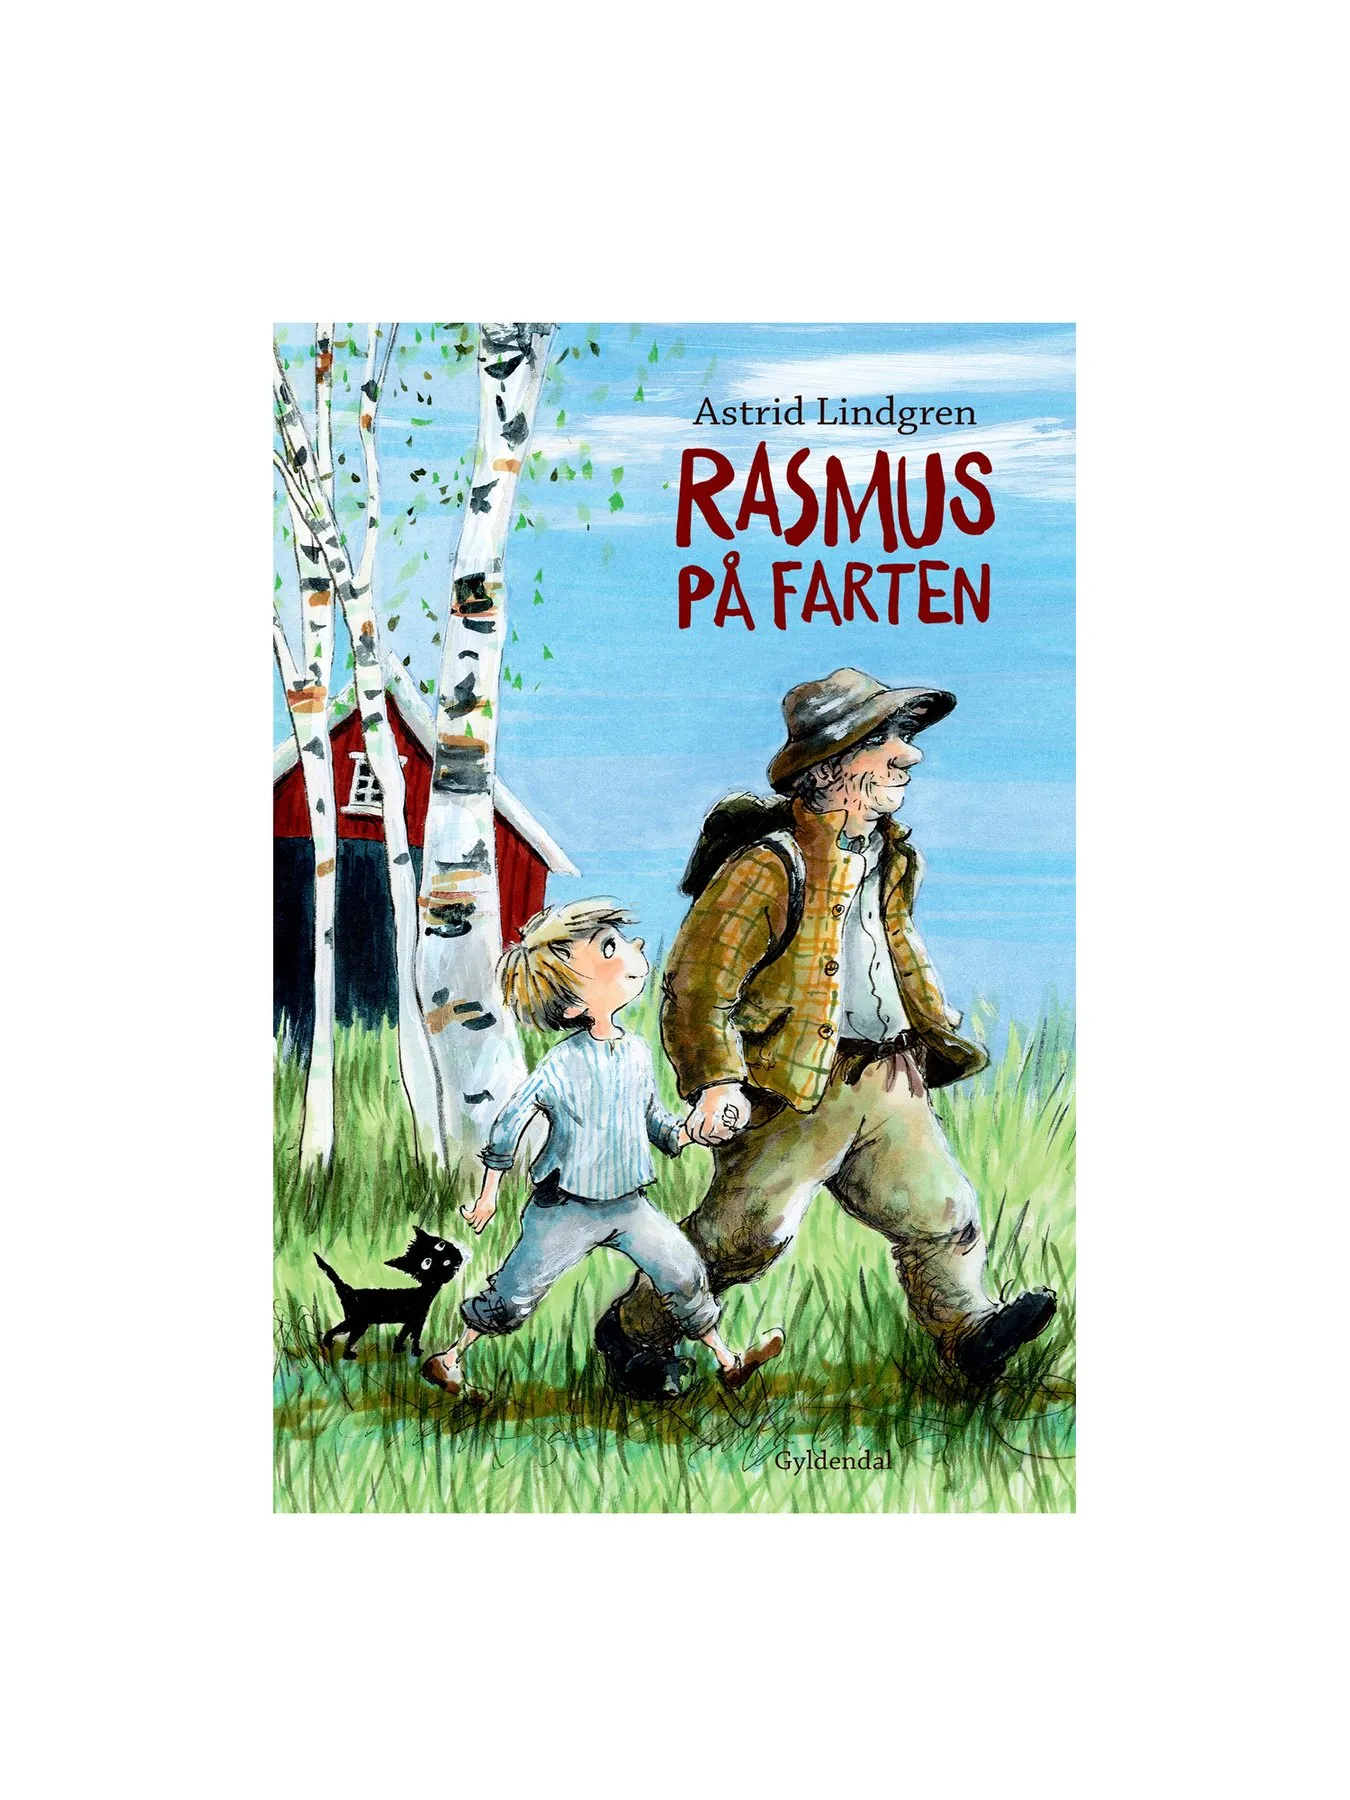 Rasmus på farten (Danish)